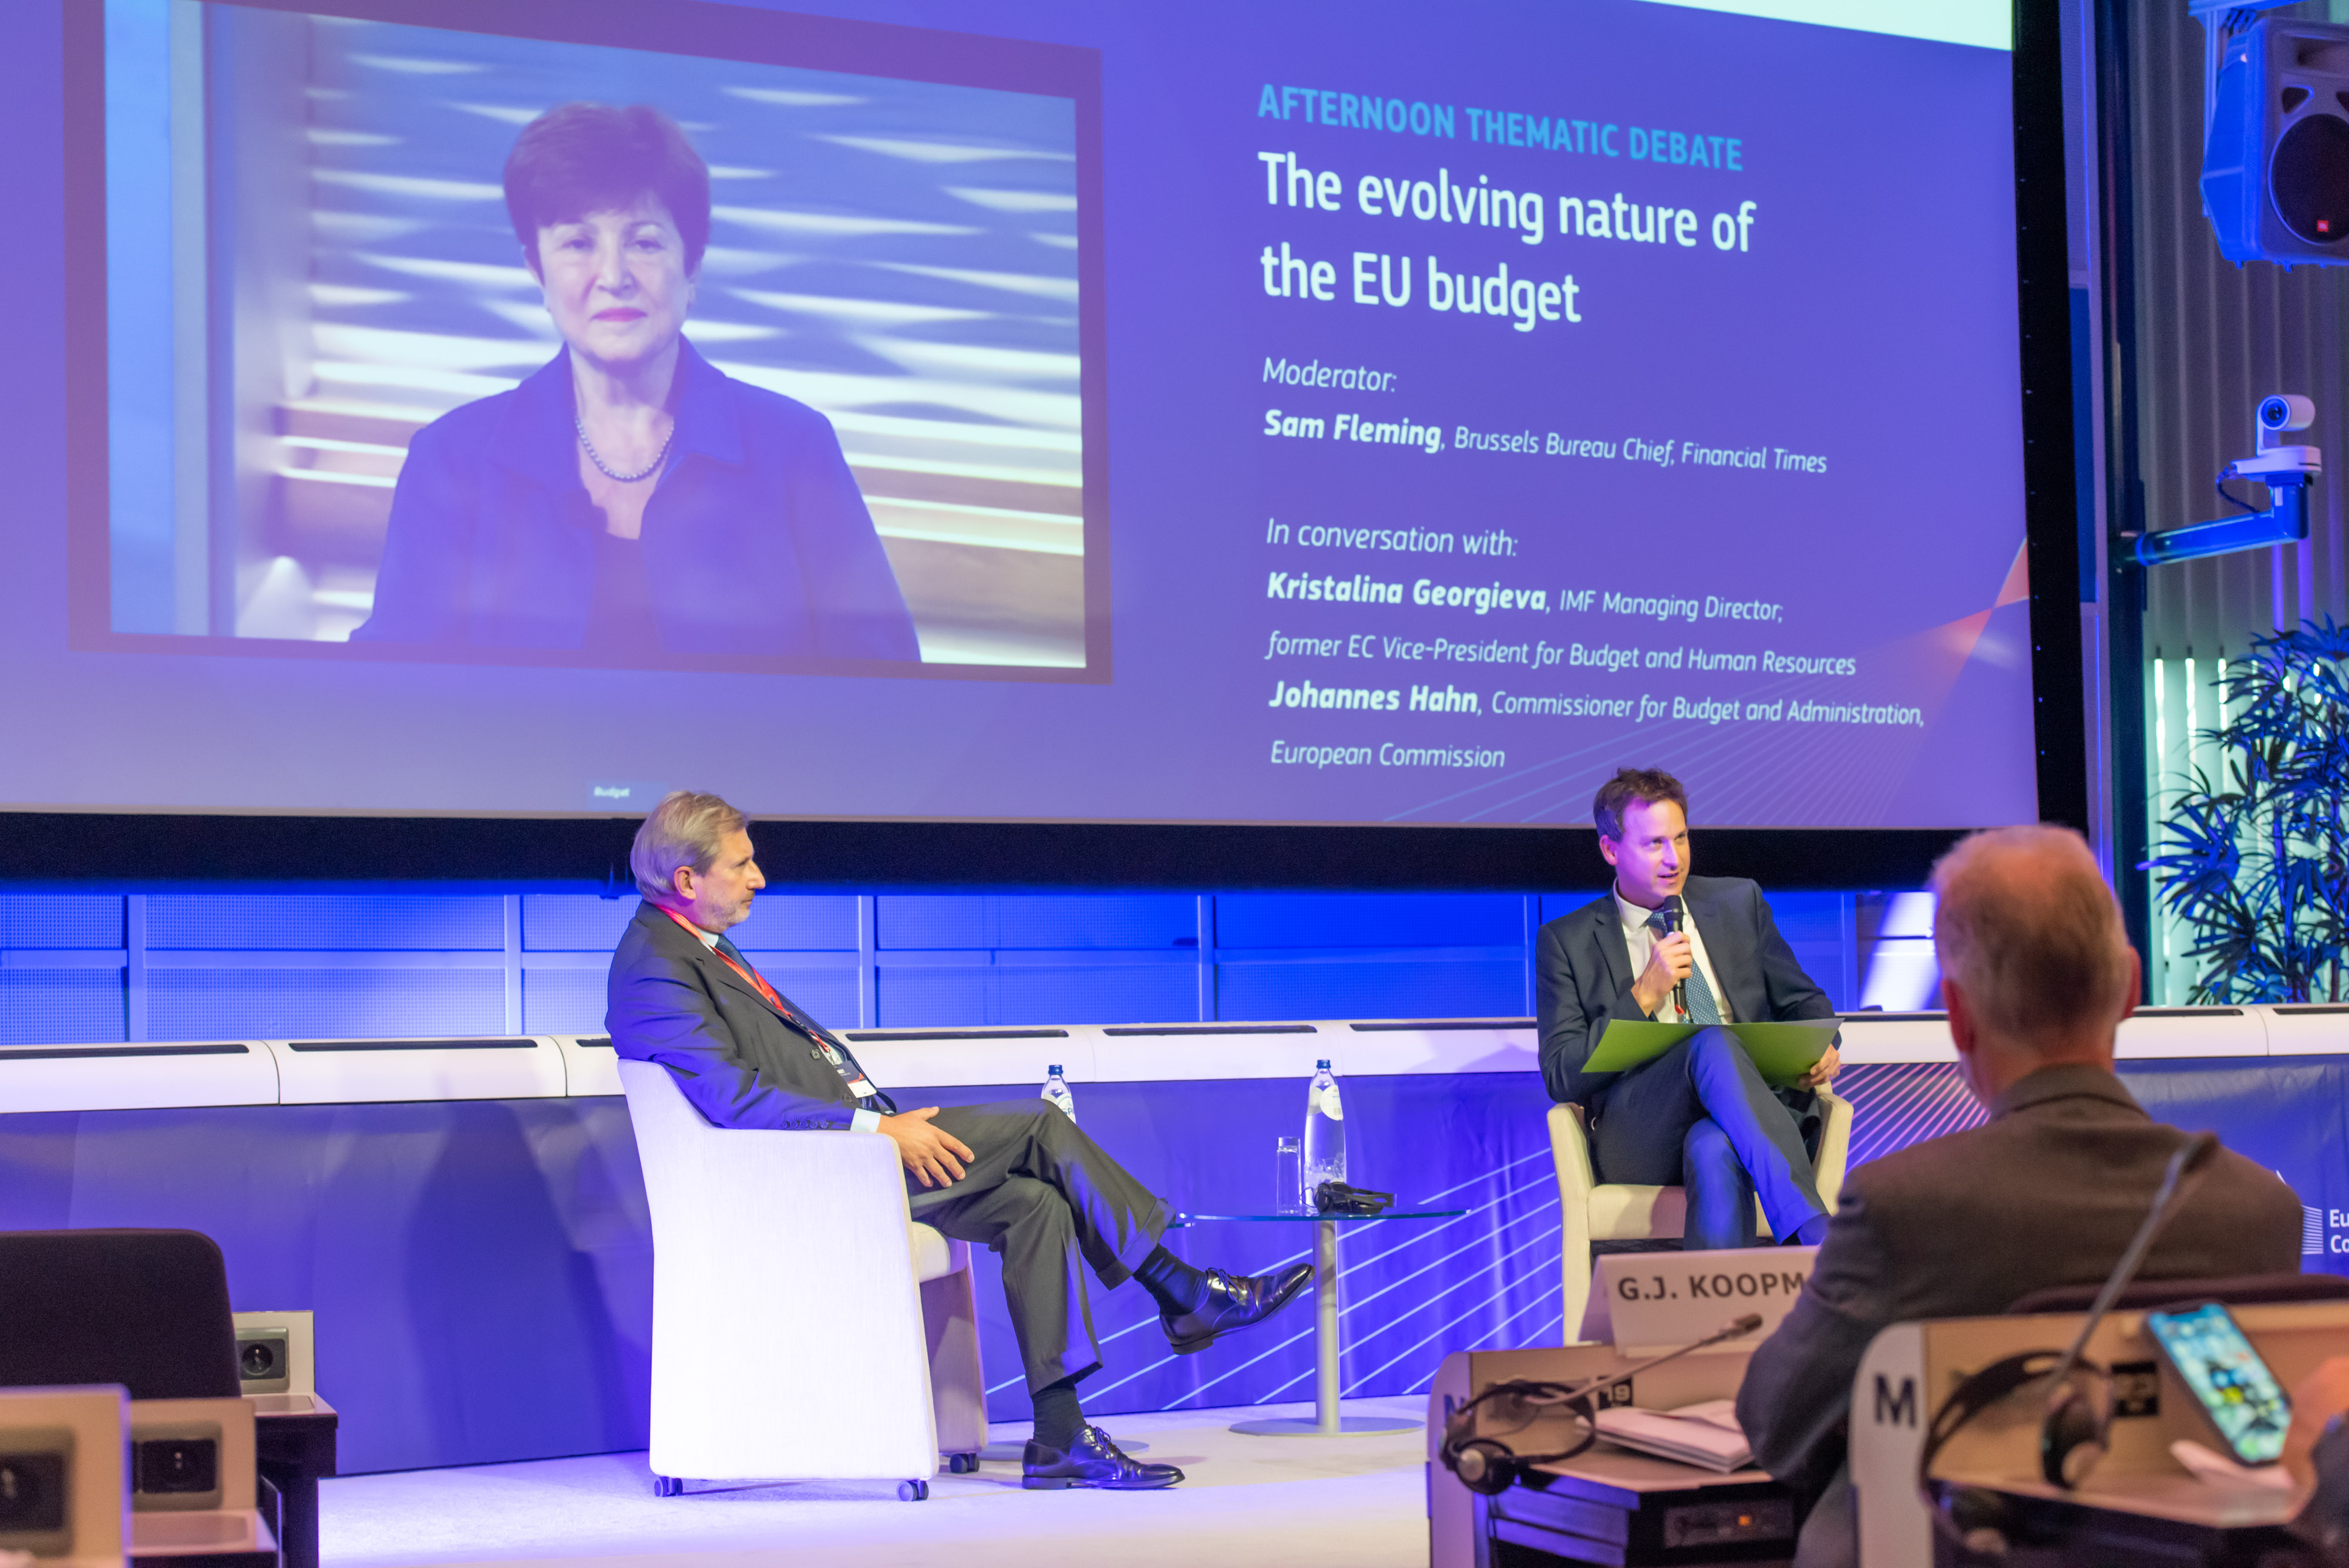 Annual EU Budget Conference 2021 - The evolving nature of the EU budget